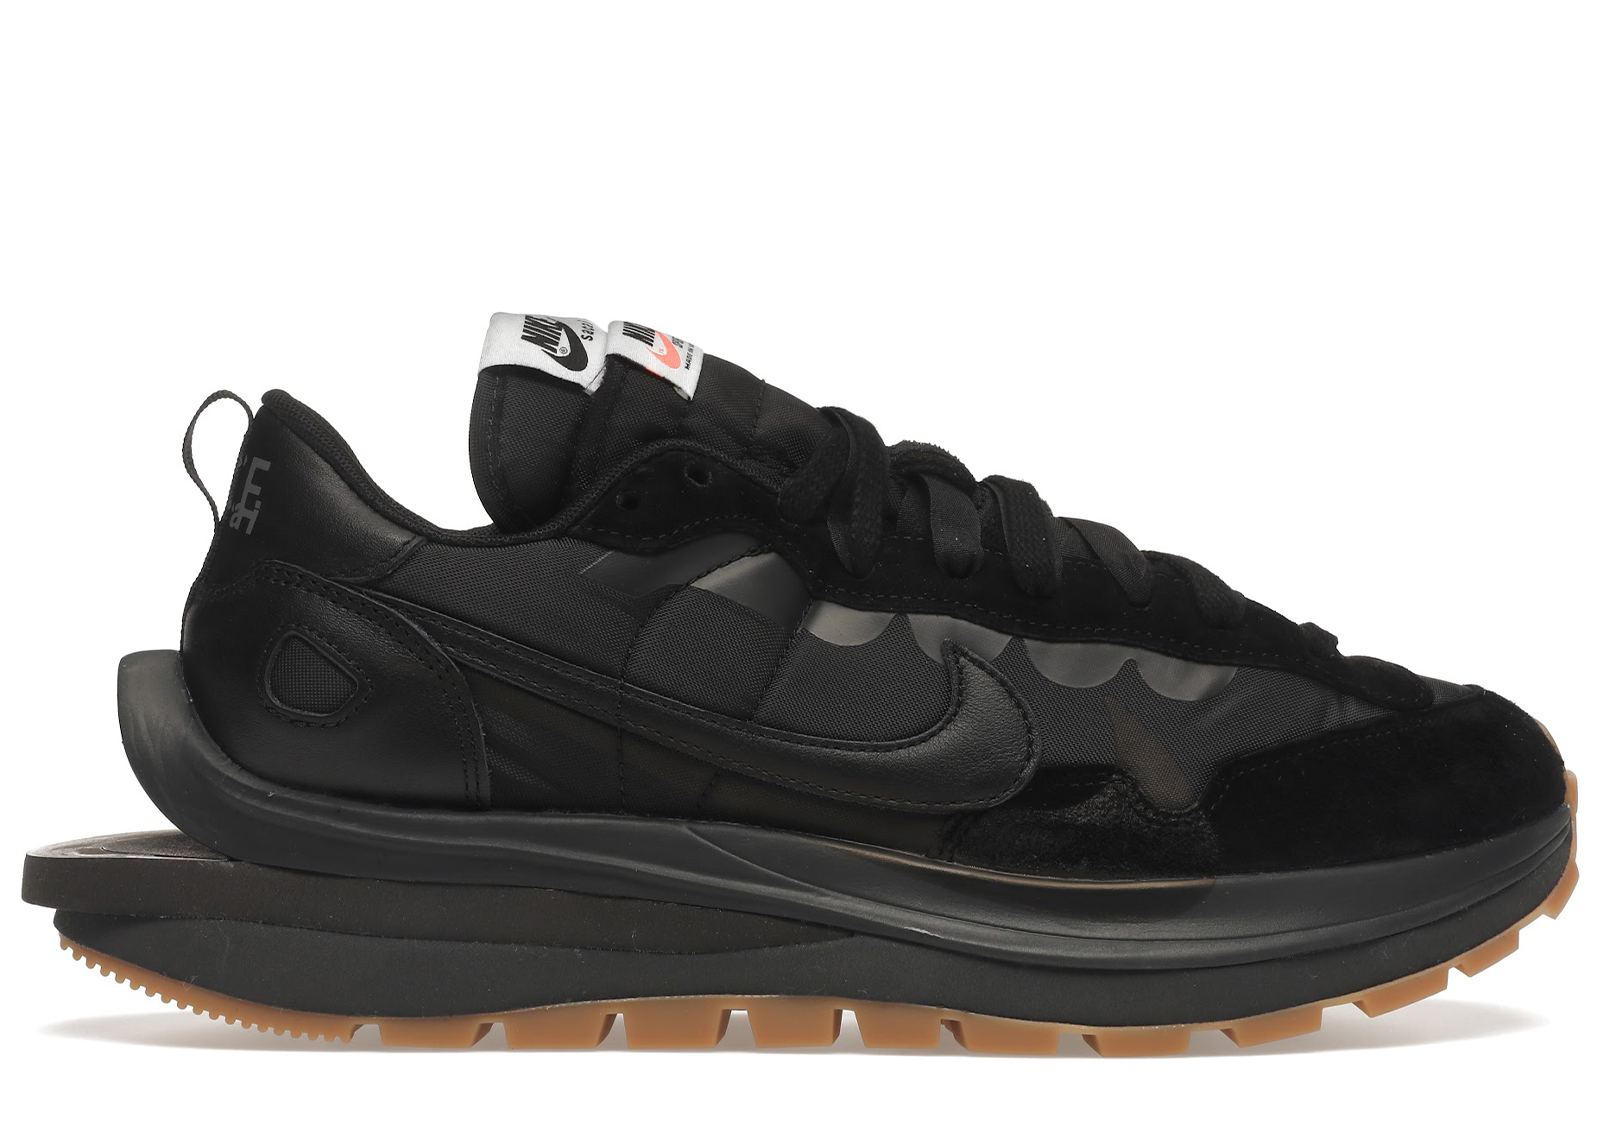 Nike Vaporwaffle sacai Black Gum - DD1875-001 - US